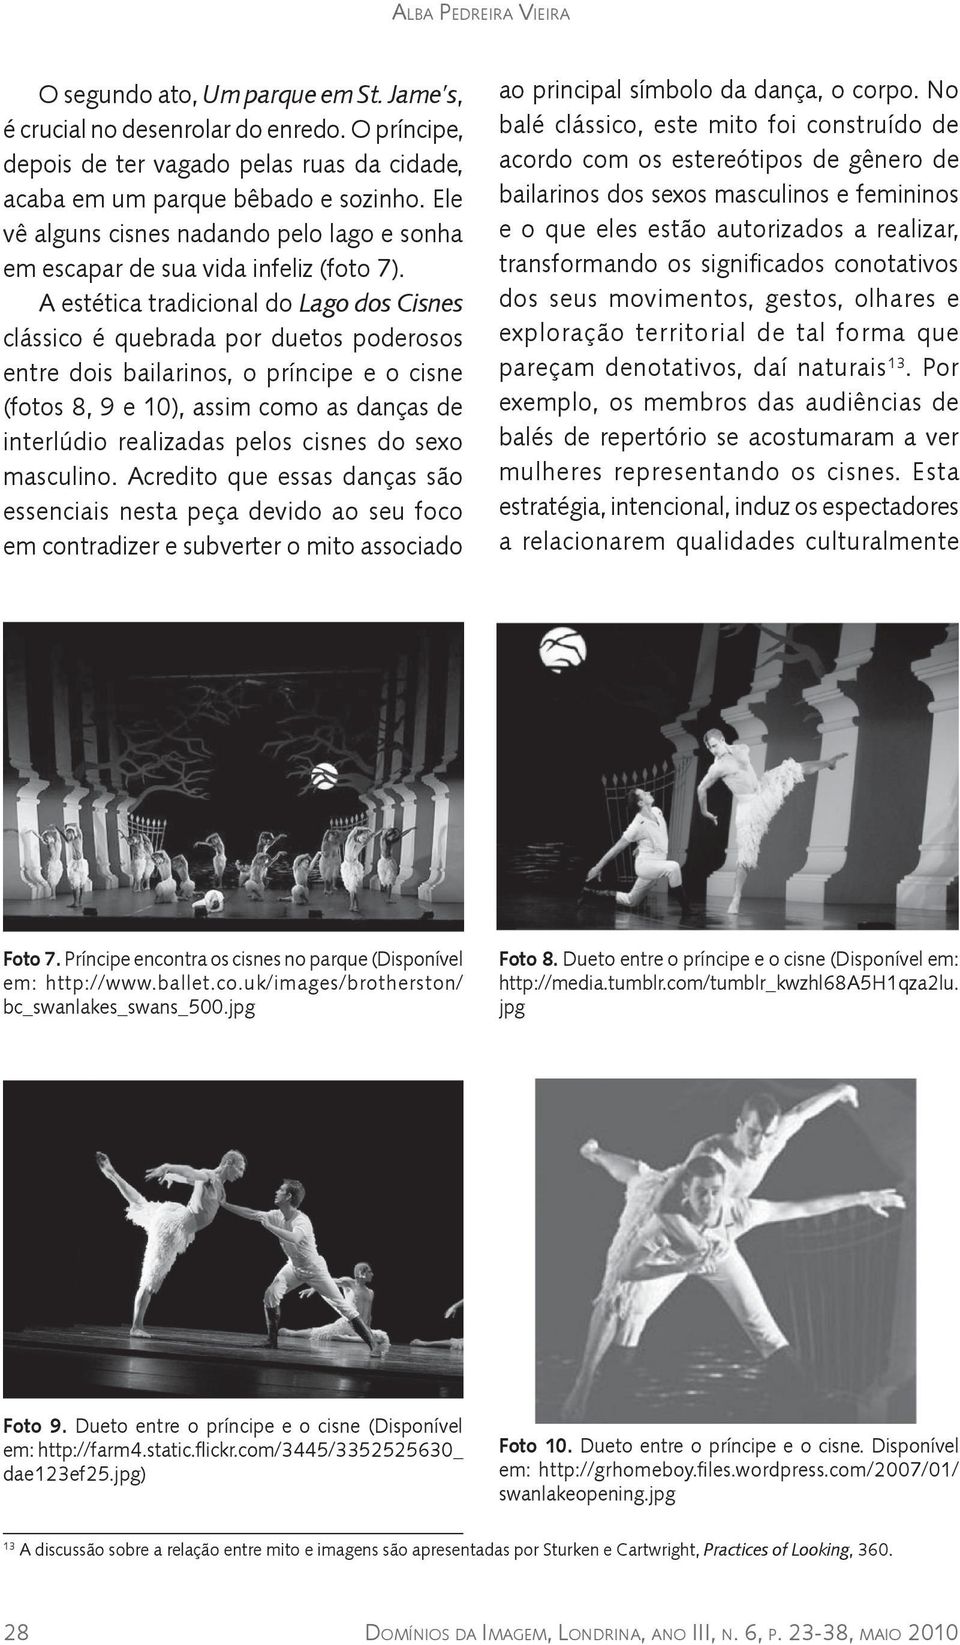 A estética tradicional do Lago dos Cisnes clássico é quebrada por duetos poderosos entre dois bailarinos, o príncipe e o cisne (fotos 8, 9 e 10), assim como as danças de interlúdio realizadas pelos